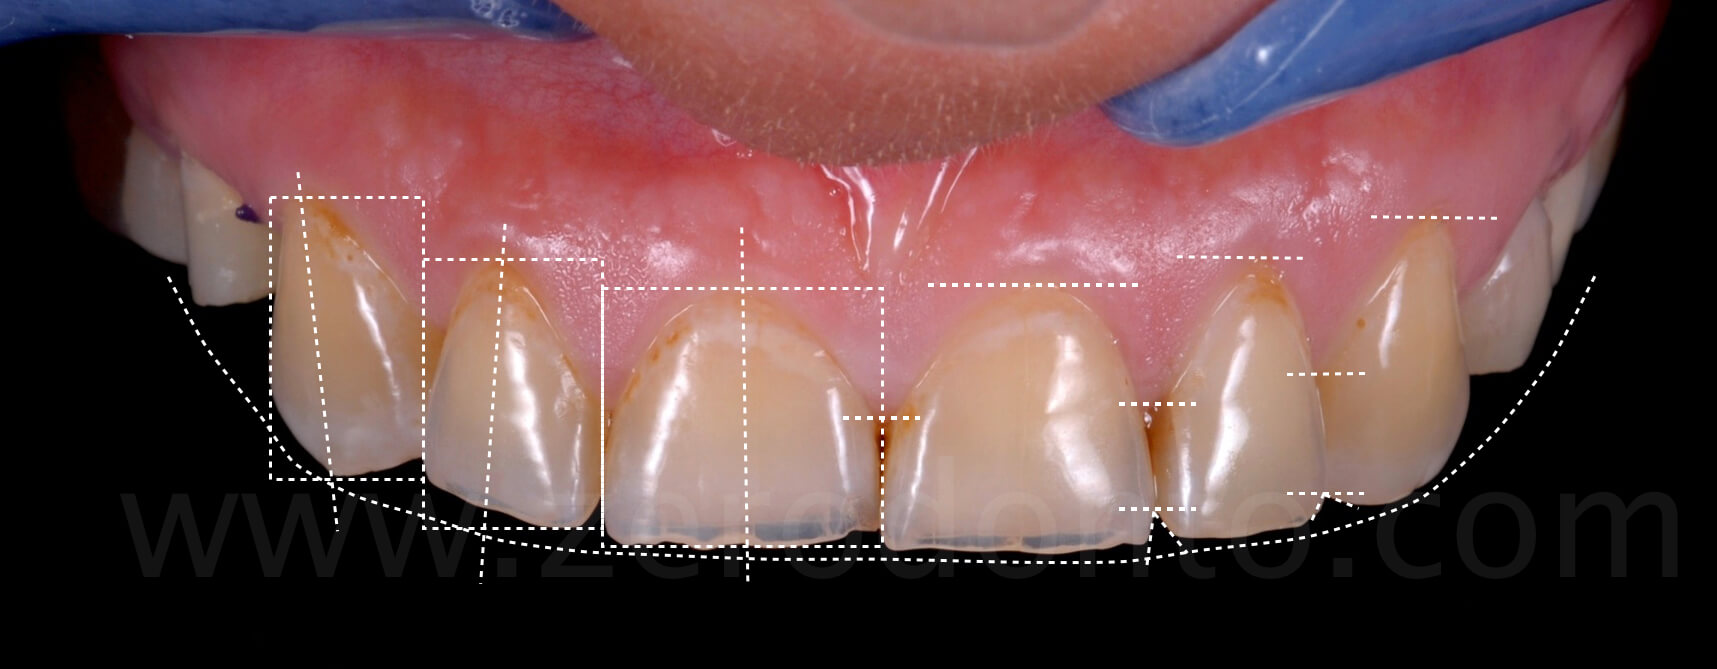 dental analysis evaluation dental erosion zerodonto fadein